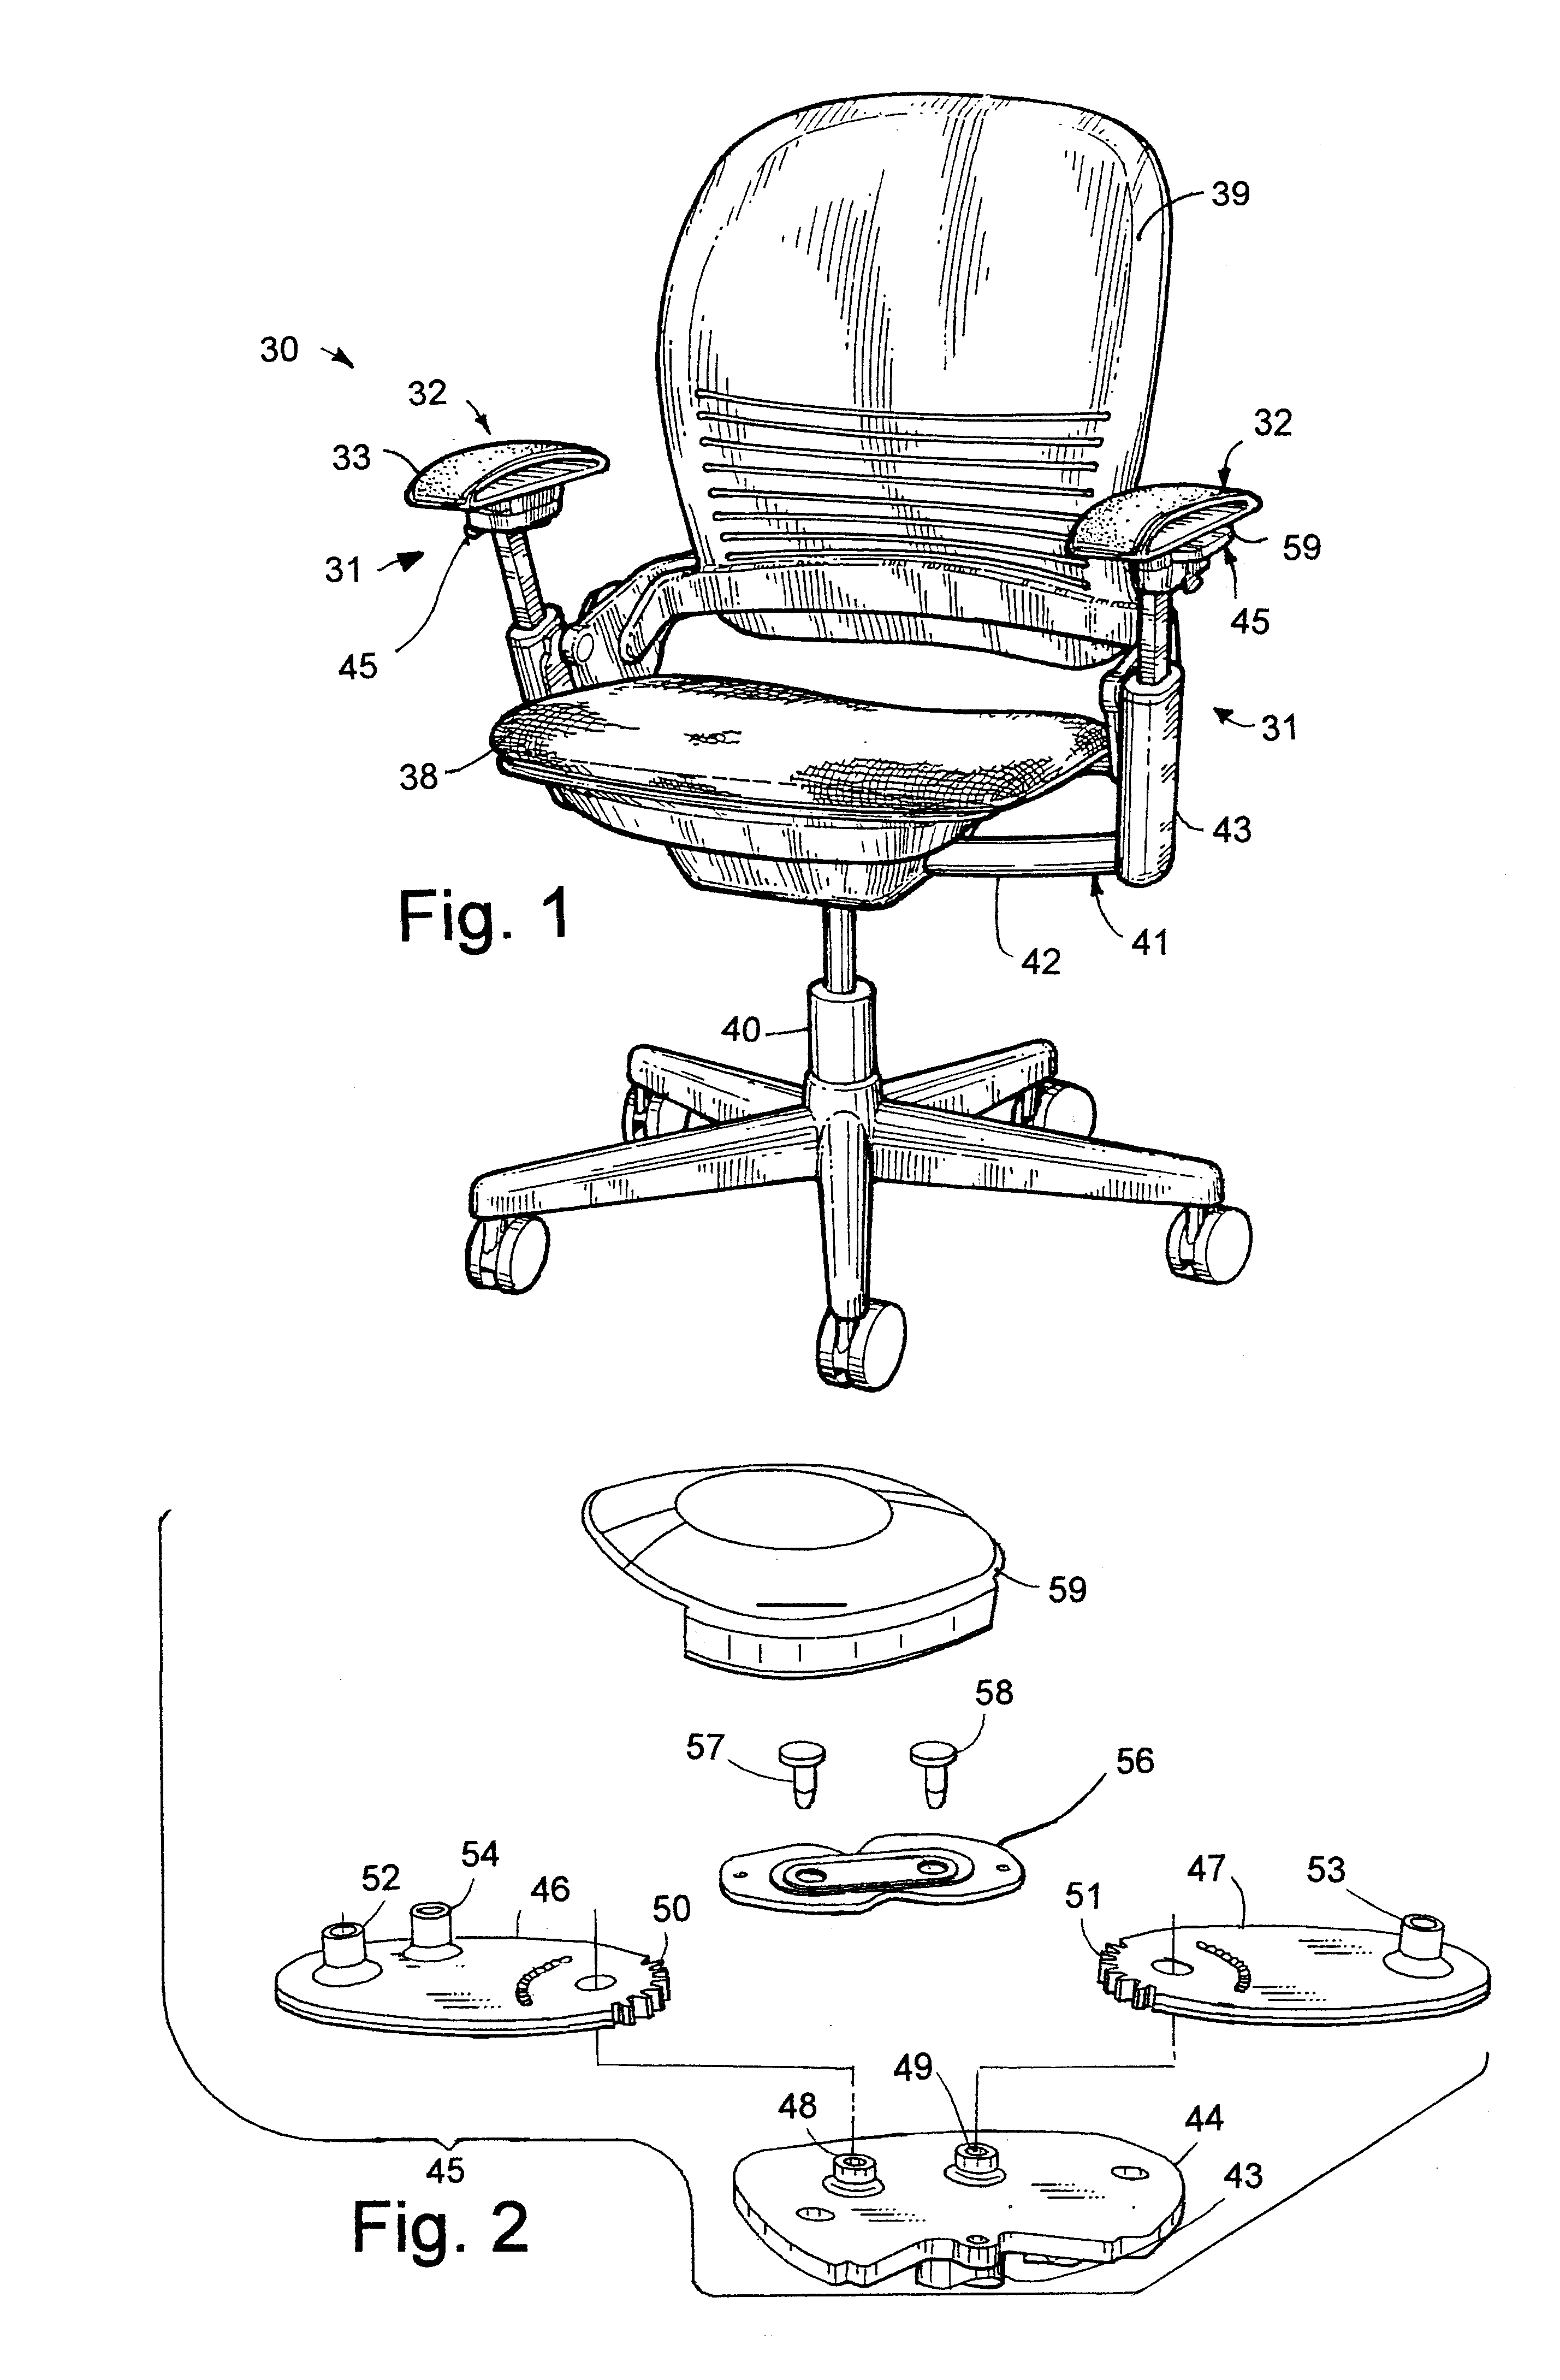 Flexible armrest construction